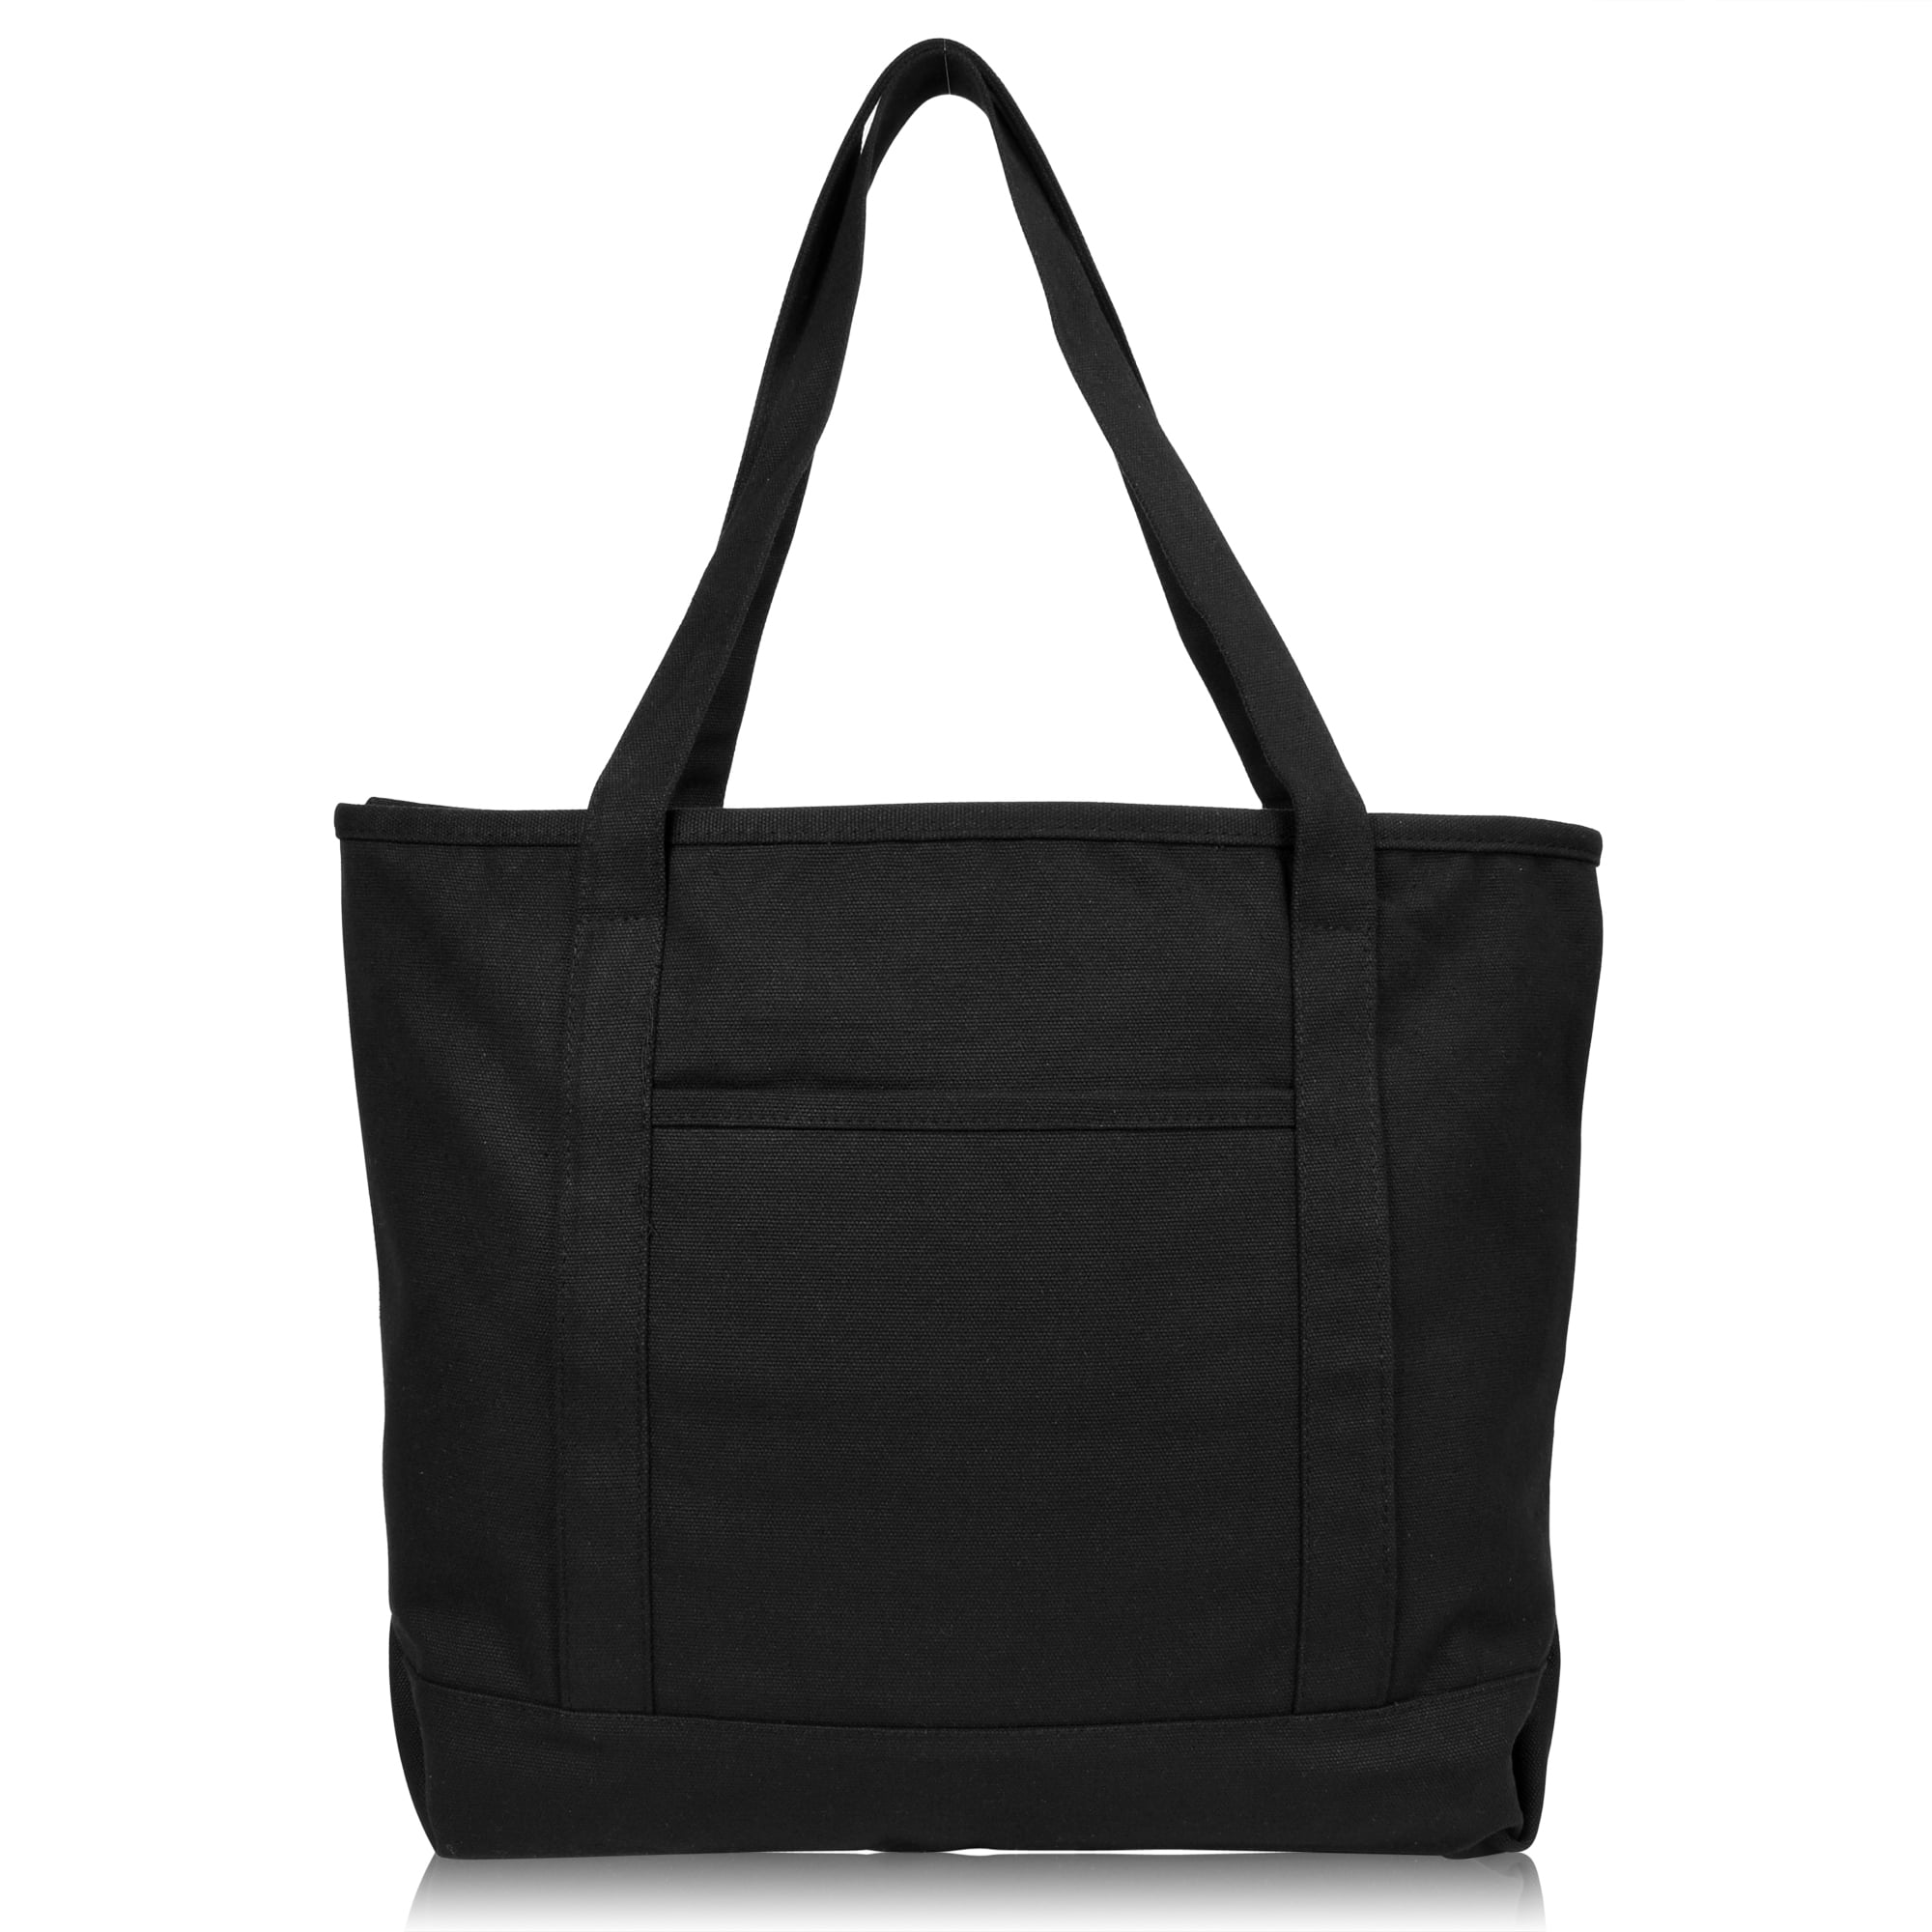 Lululemon Double-Handle Canvas Tote Bag 17L - Black/White/natural/black Cotton Fabric